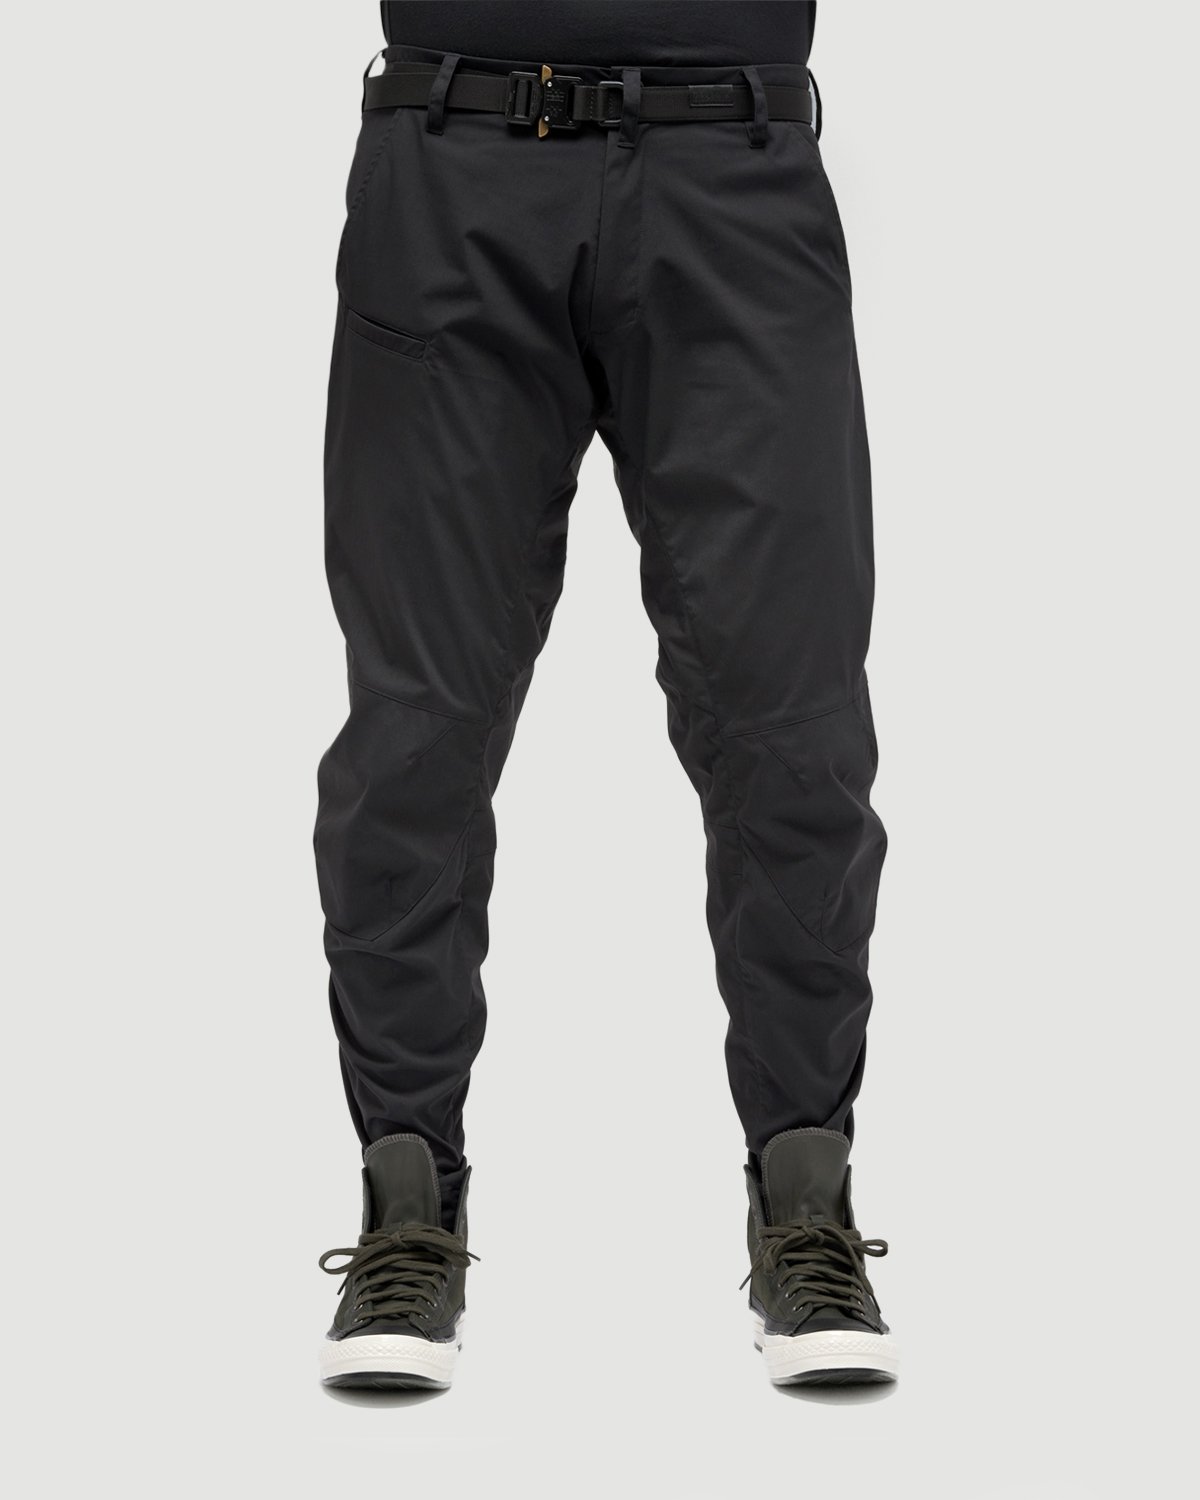 ACRONYM - P10-E Pant Black - Clothing - Black - Image 8